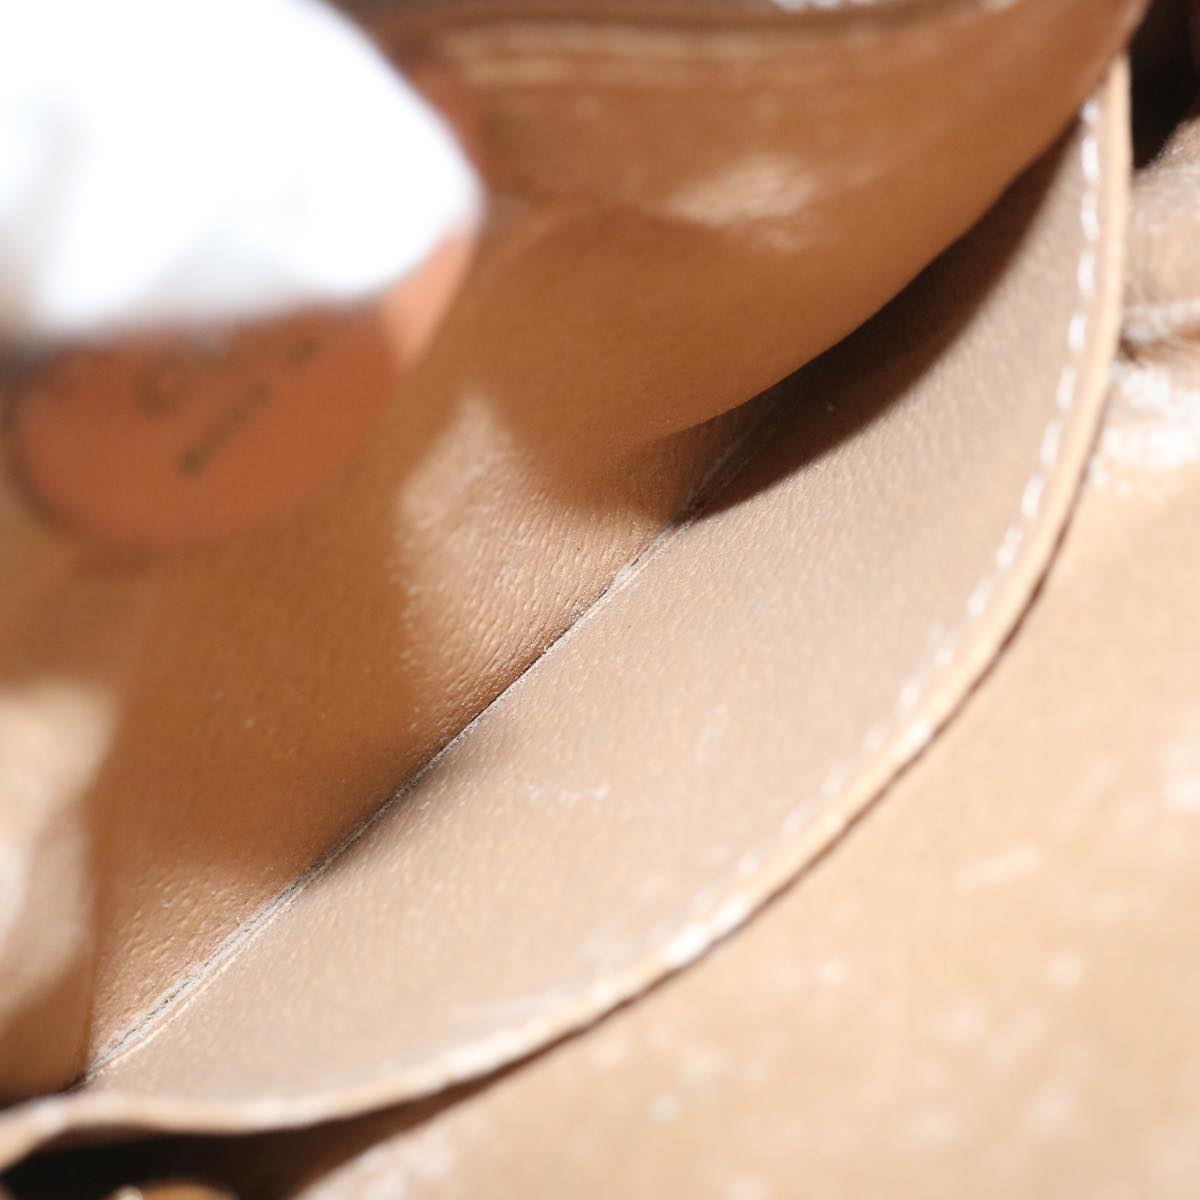 CELINE Macadam Canvas Shoulder Bag PVC Leather Brown Auth 66919